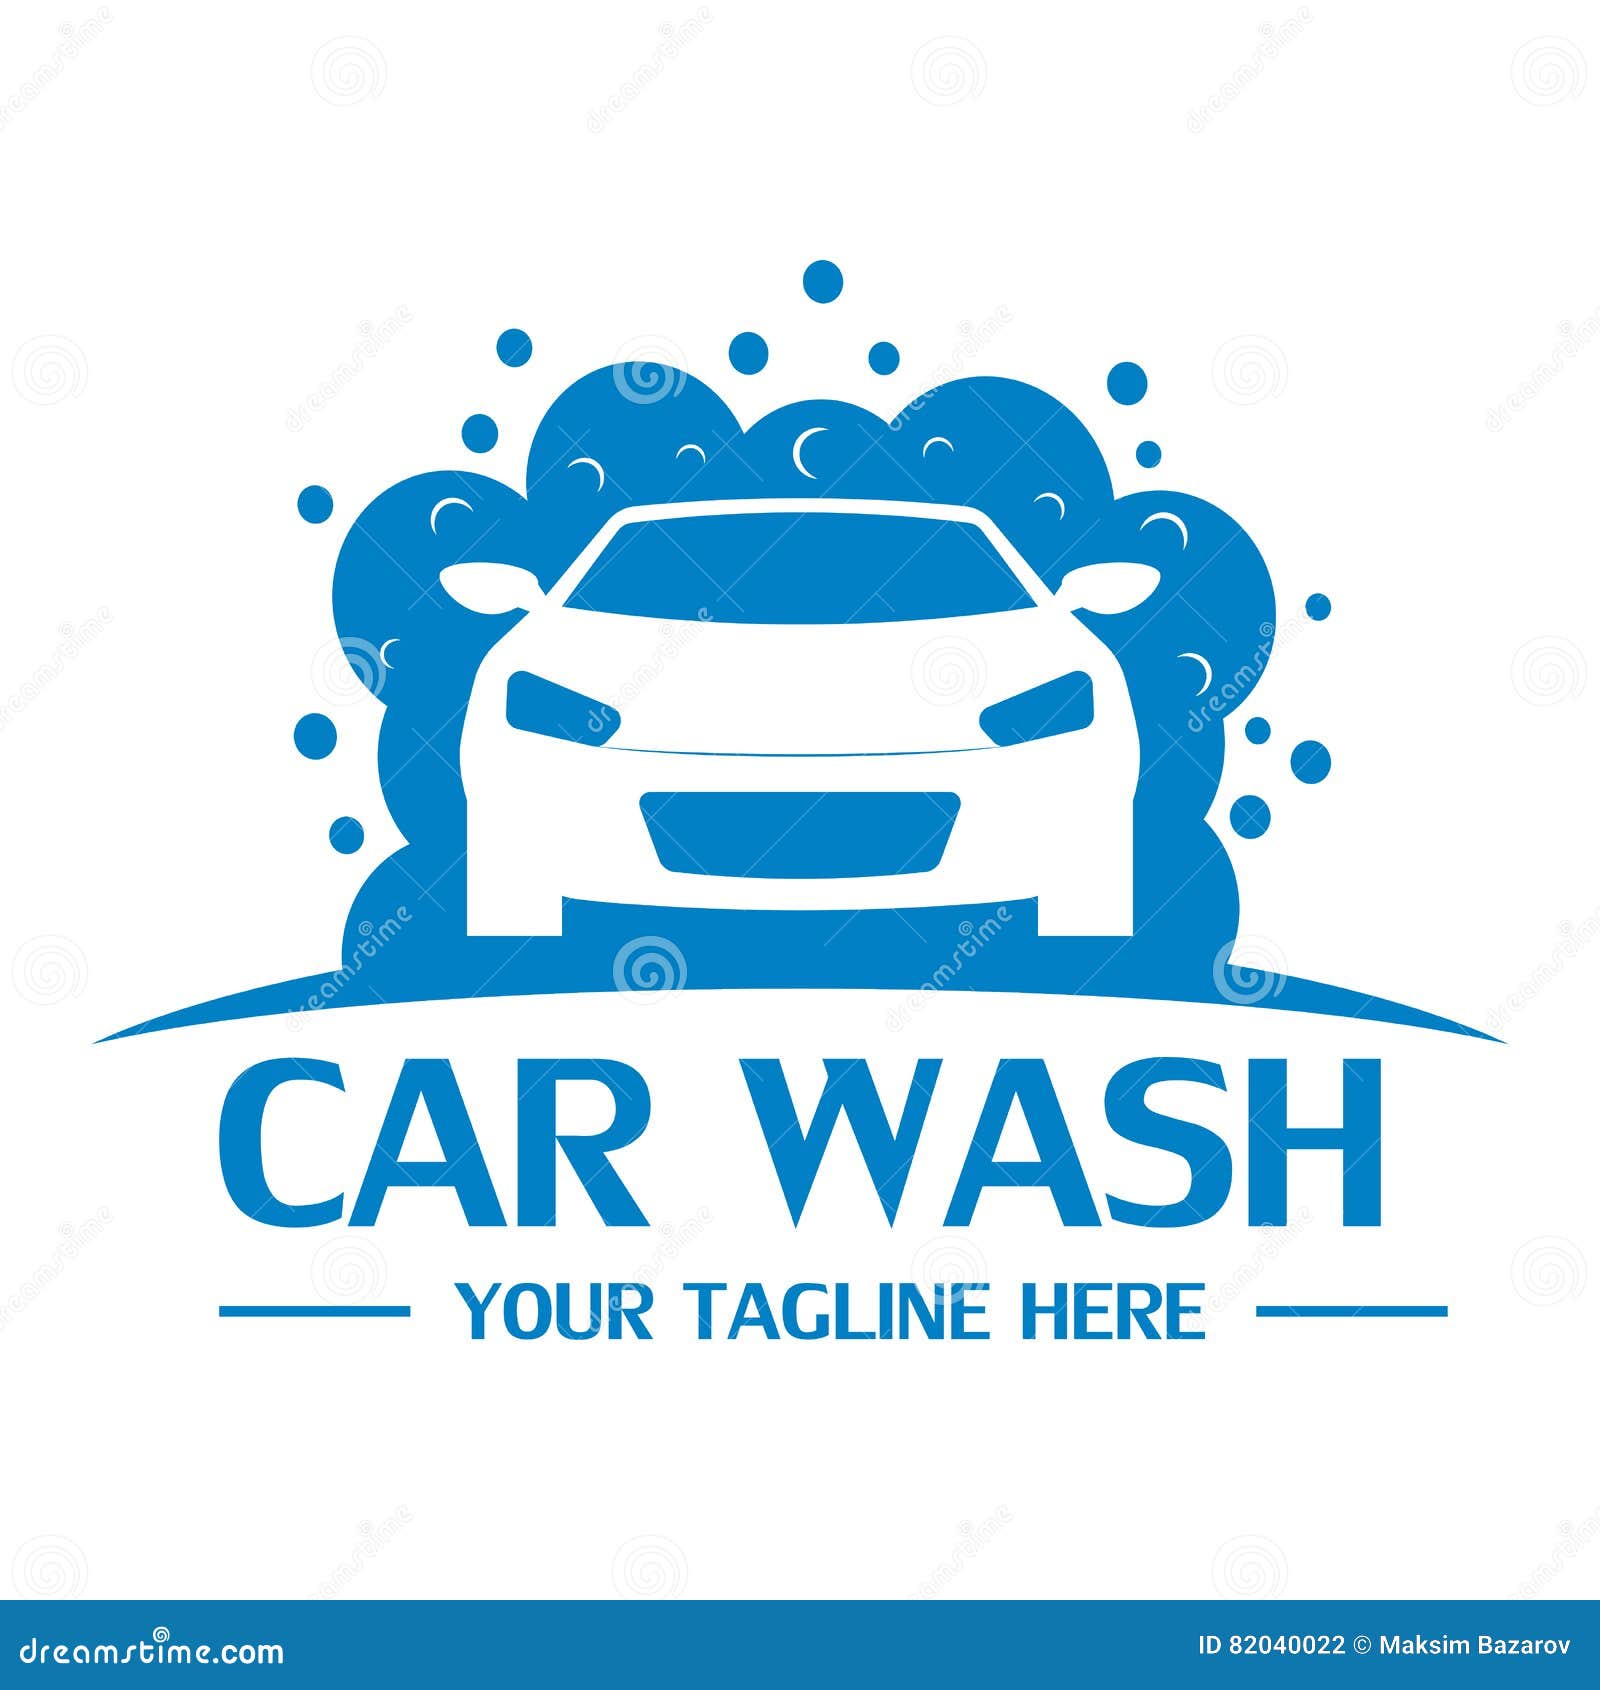 Car Wash Logo Design Free Download